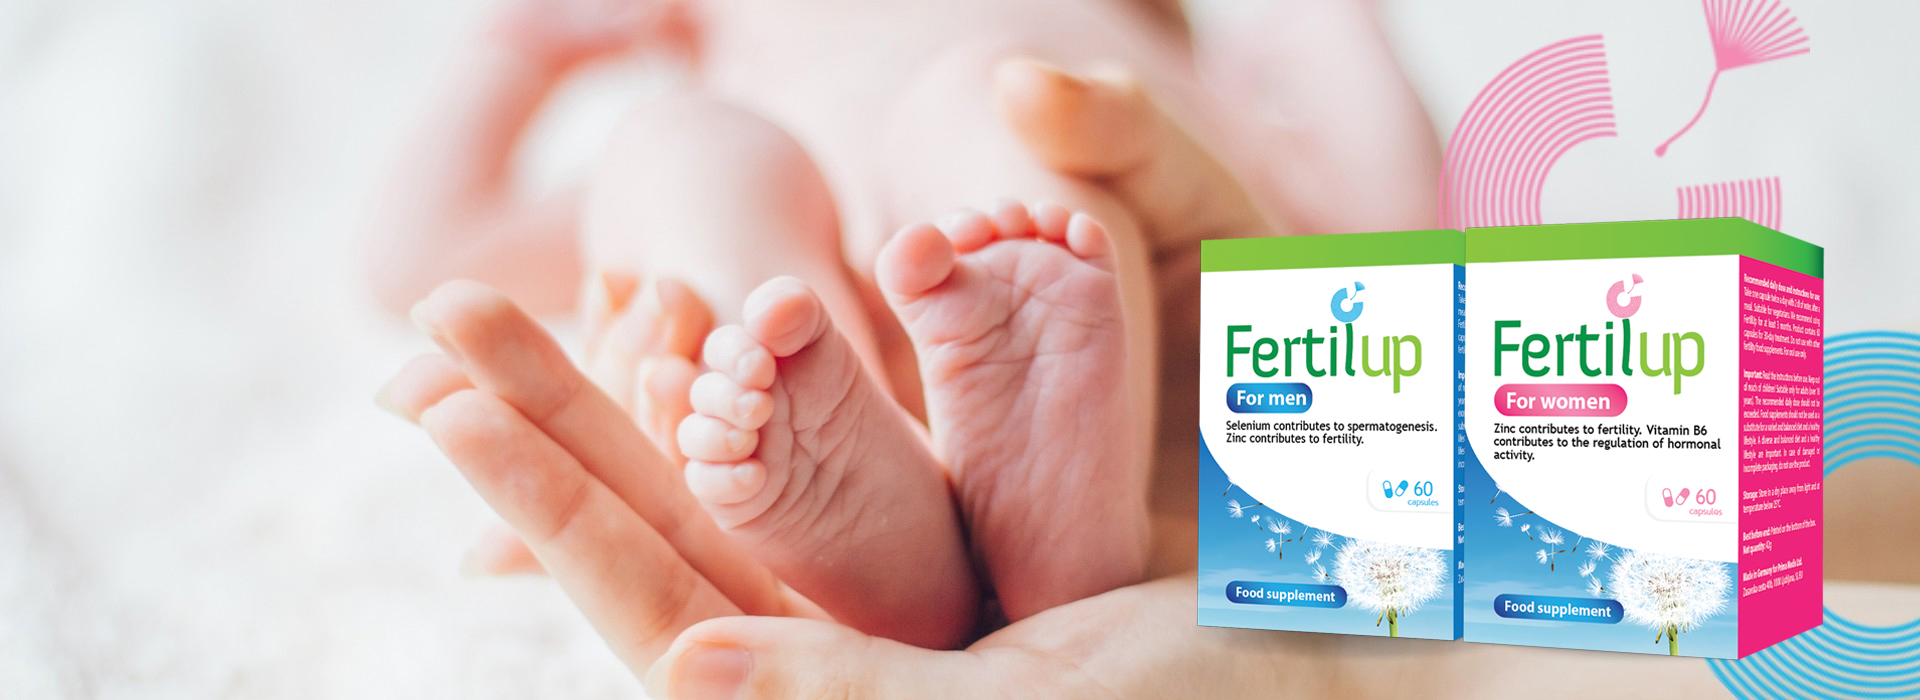 infertilita-fertilita